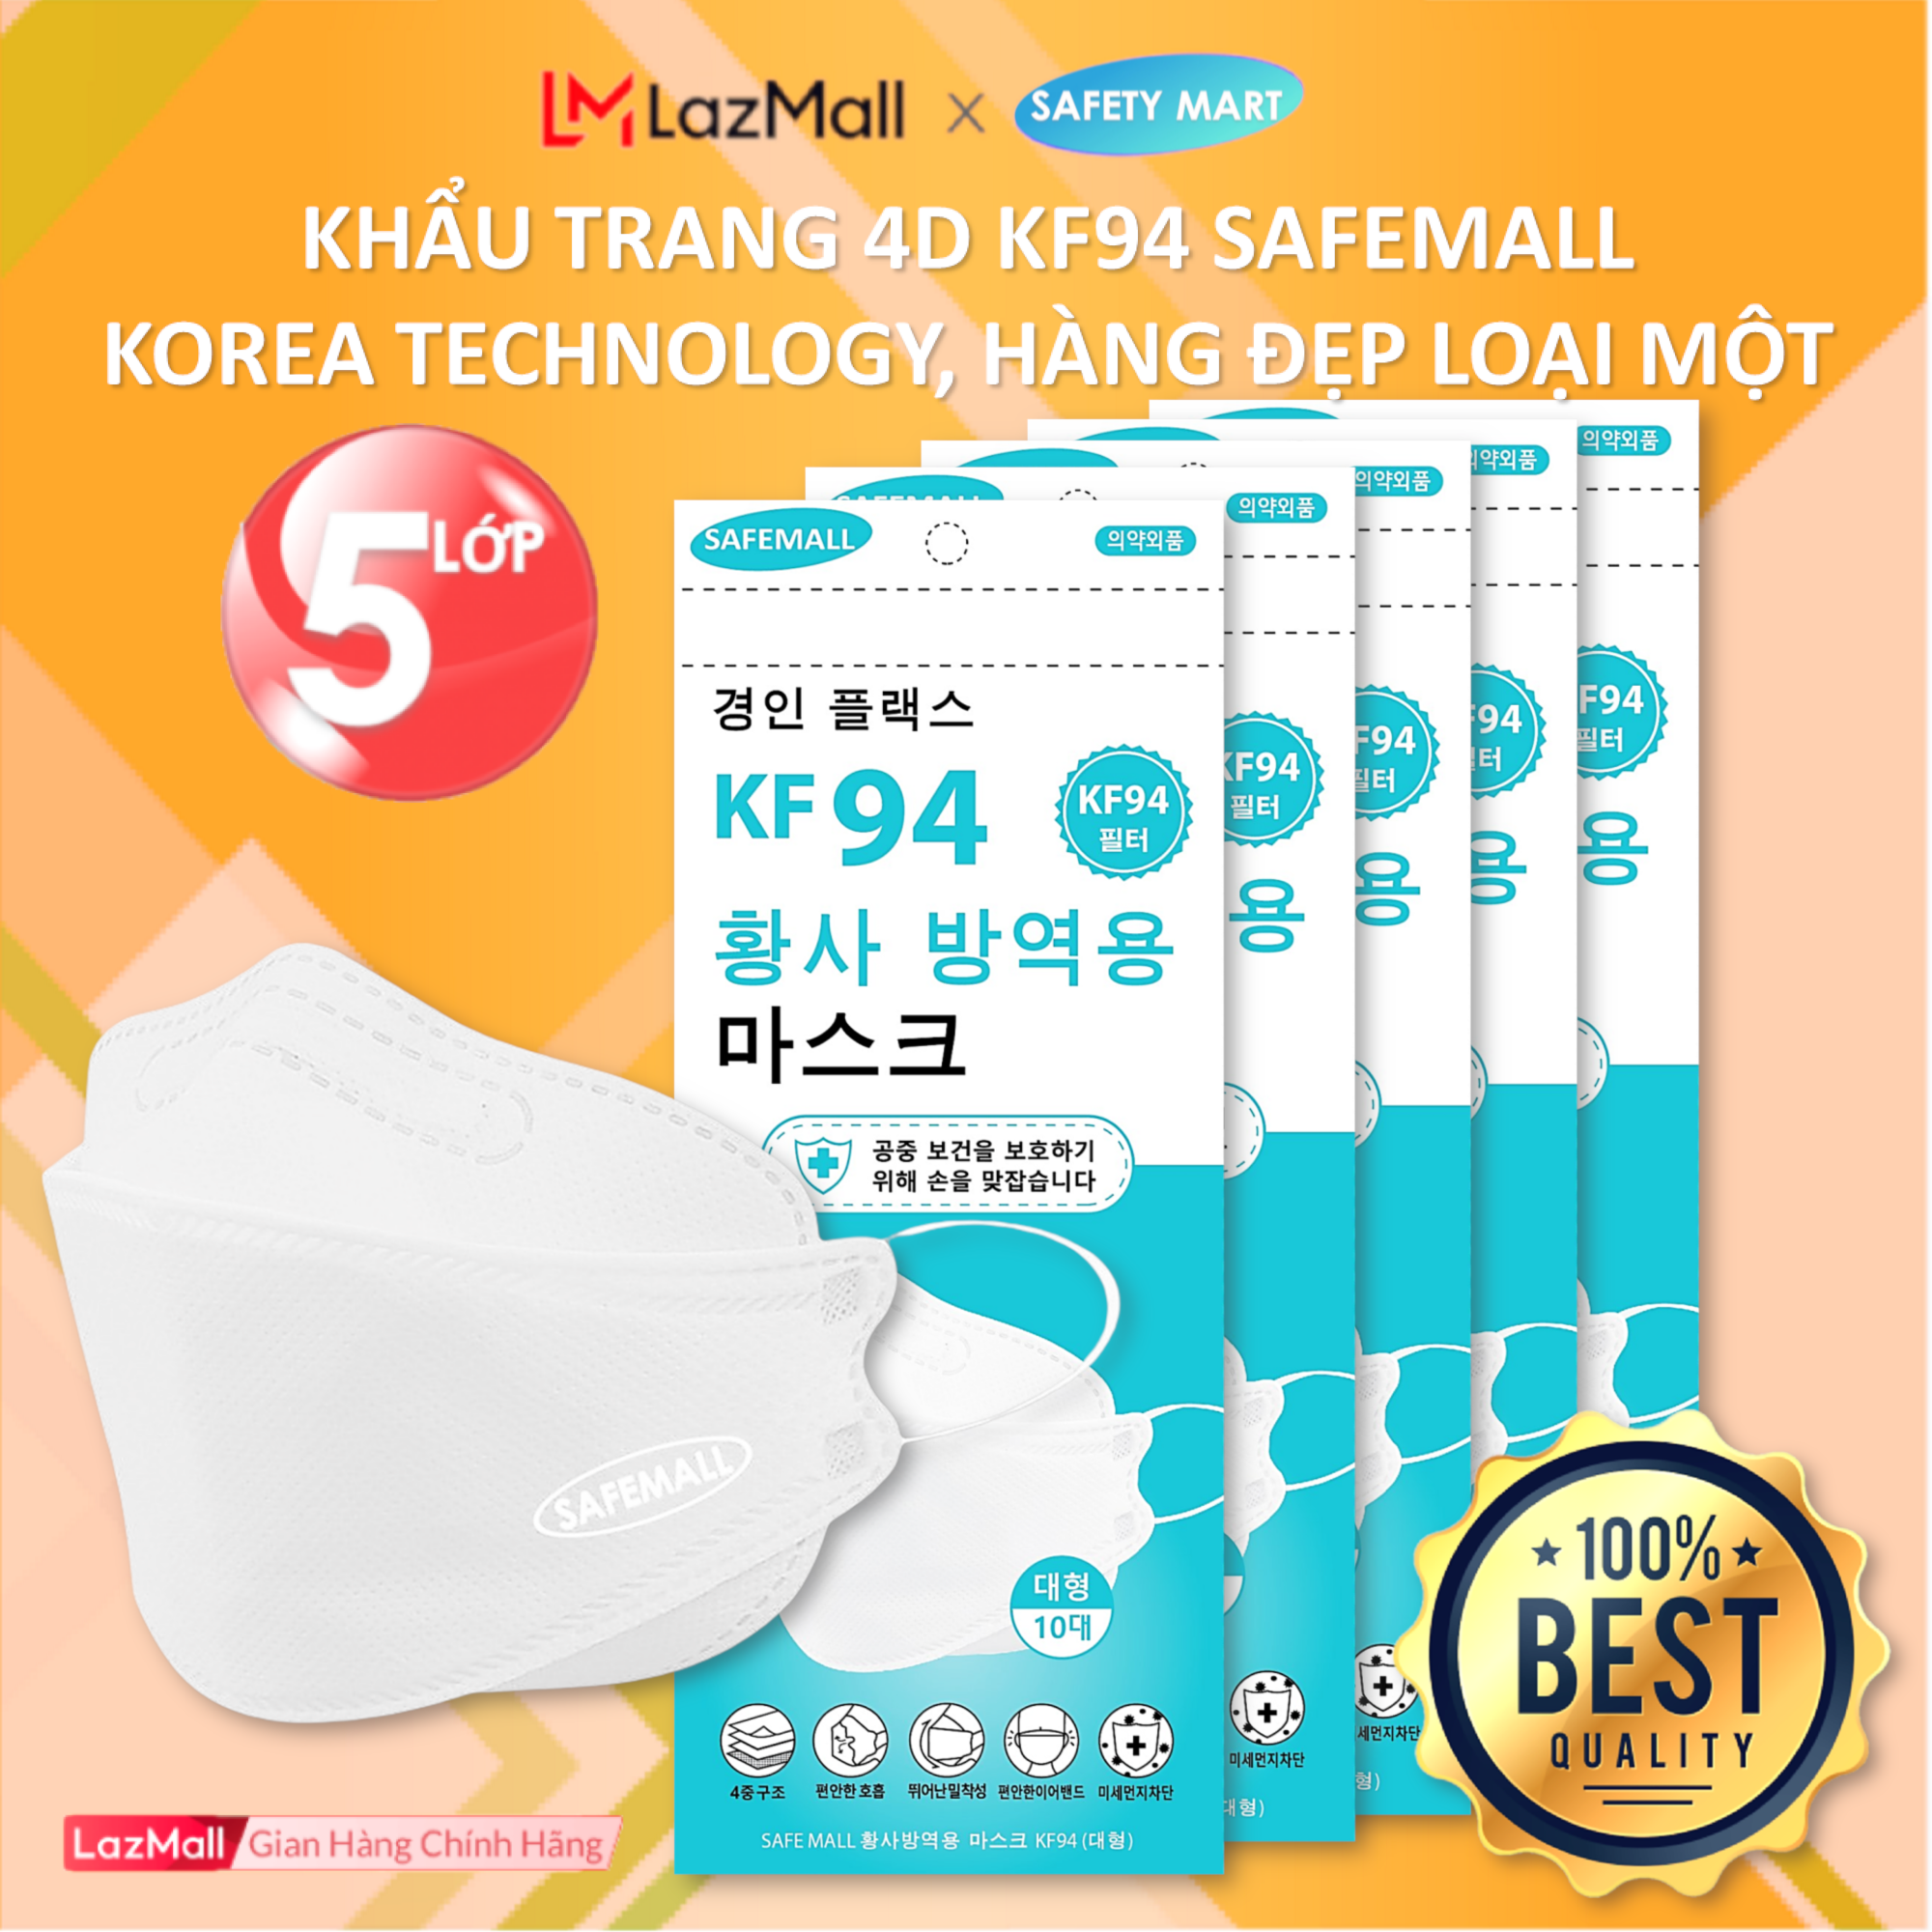 [HOT] Thùng 300/200 chiếc khẩu trang y tế 4D KF94 SafeMall N99+ (màu trắng)  Korea Technology, 5 lớp vải kháng khuẩn, kháng bụi mịn lên đến 95%, đạt tiêu chuẩn ISO - Hàng Chính Hãng Safety Mart Official